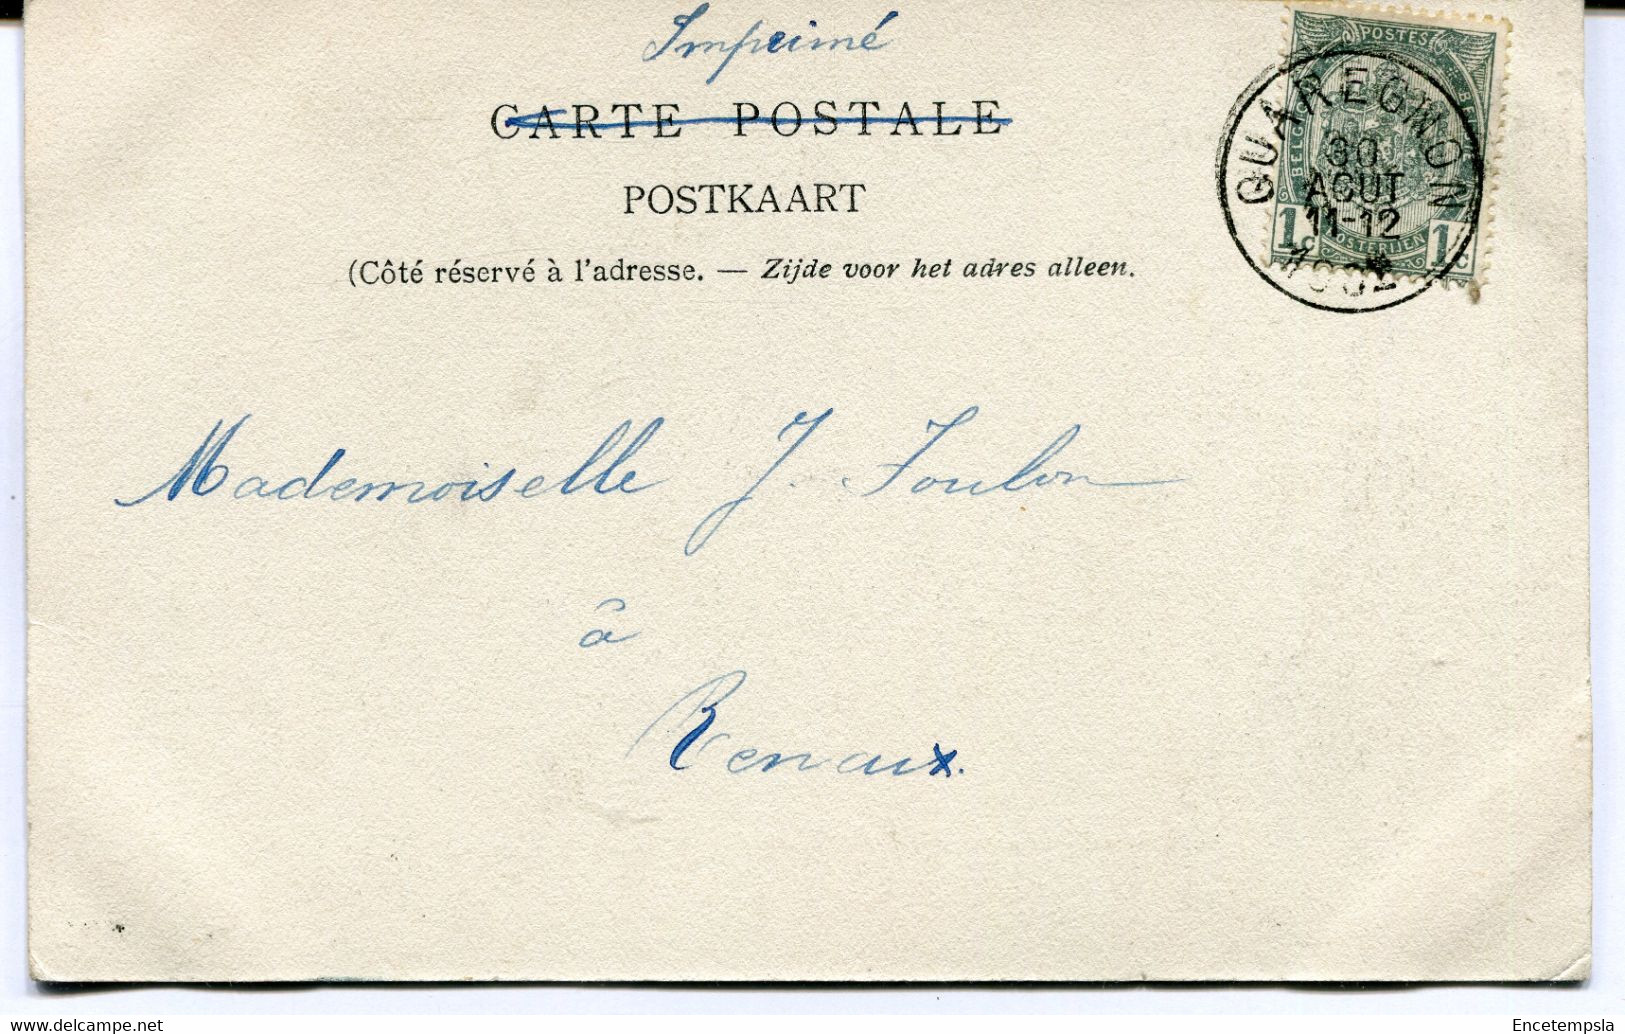 CPA - Carte Postale - Belgique - Quaregnon - Rue De Monsville  (AT16544) - Quaregnon